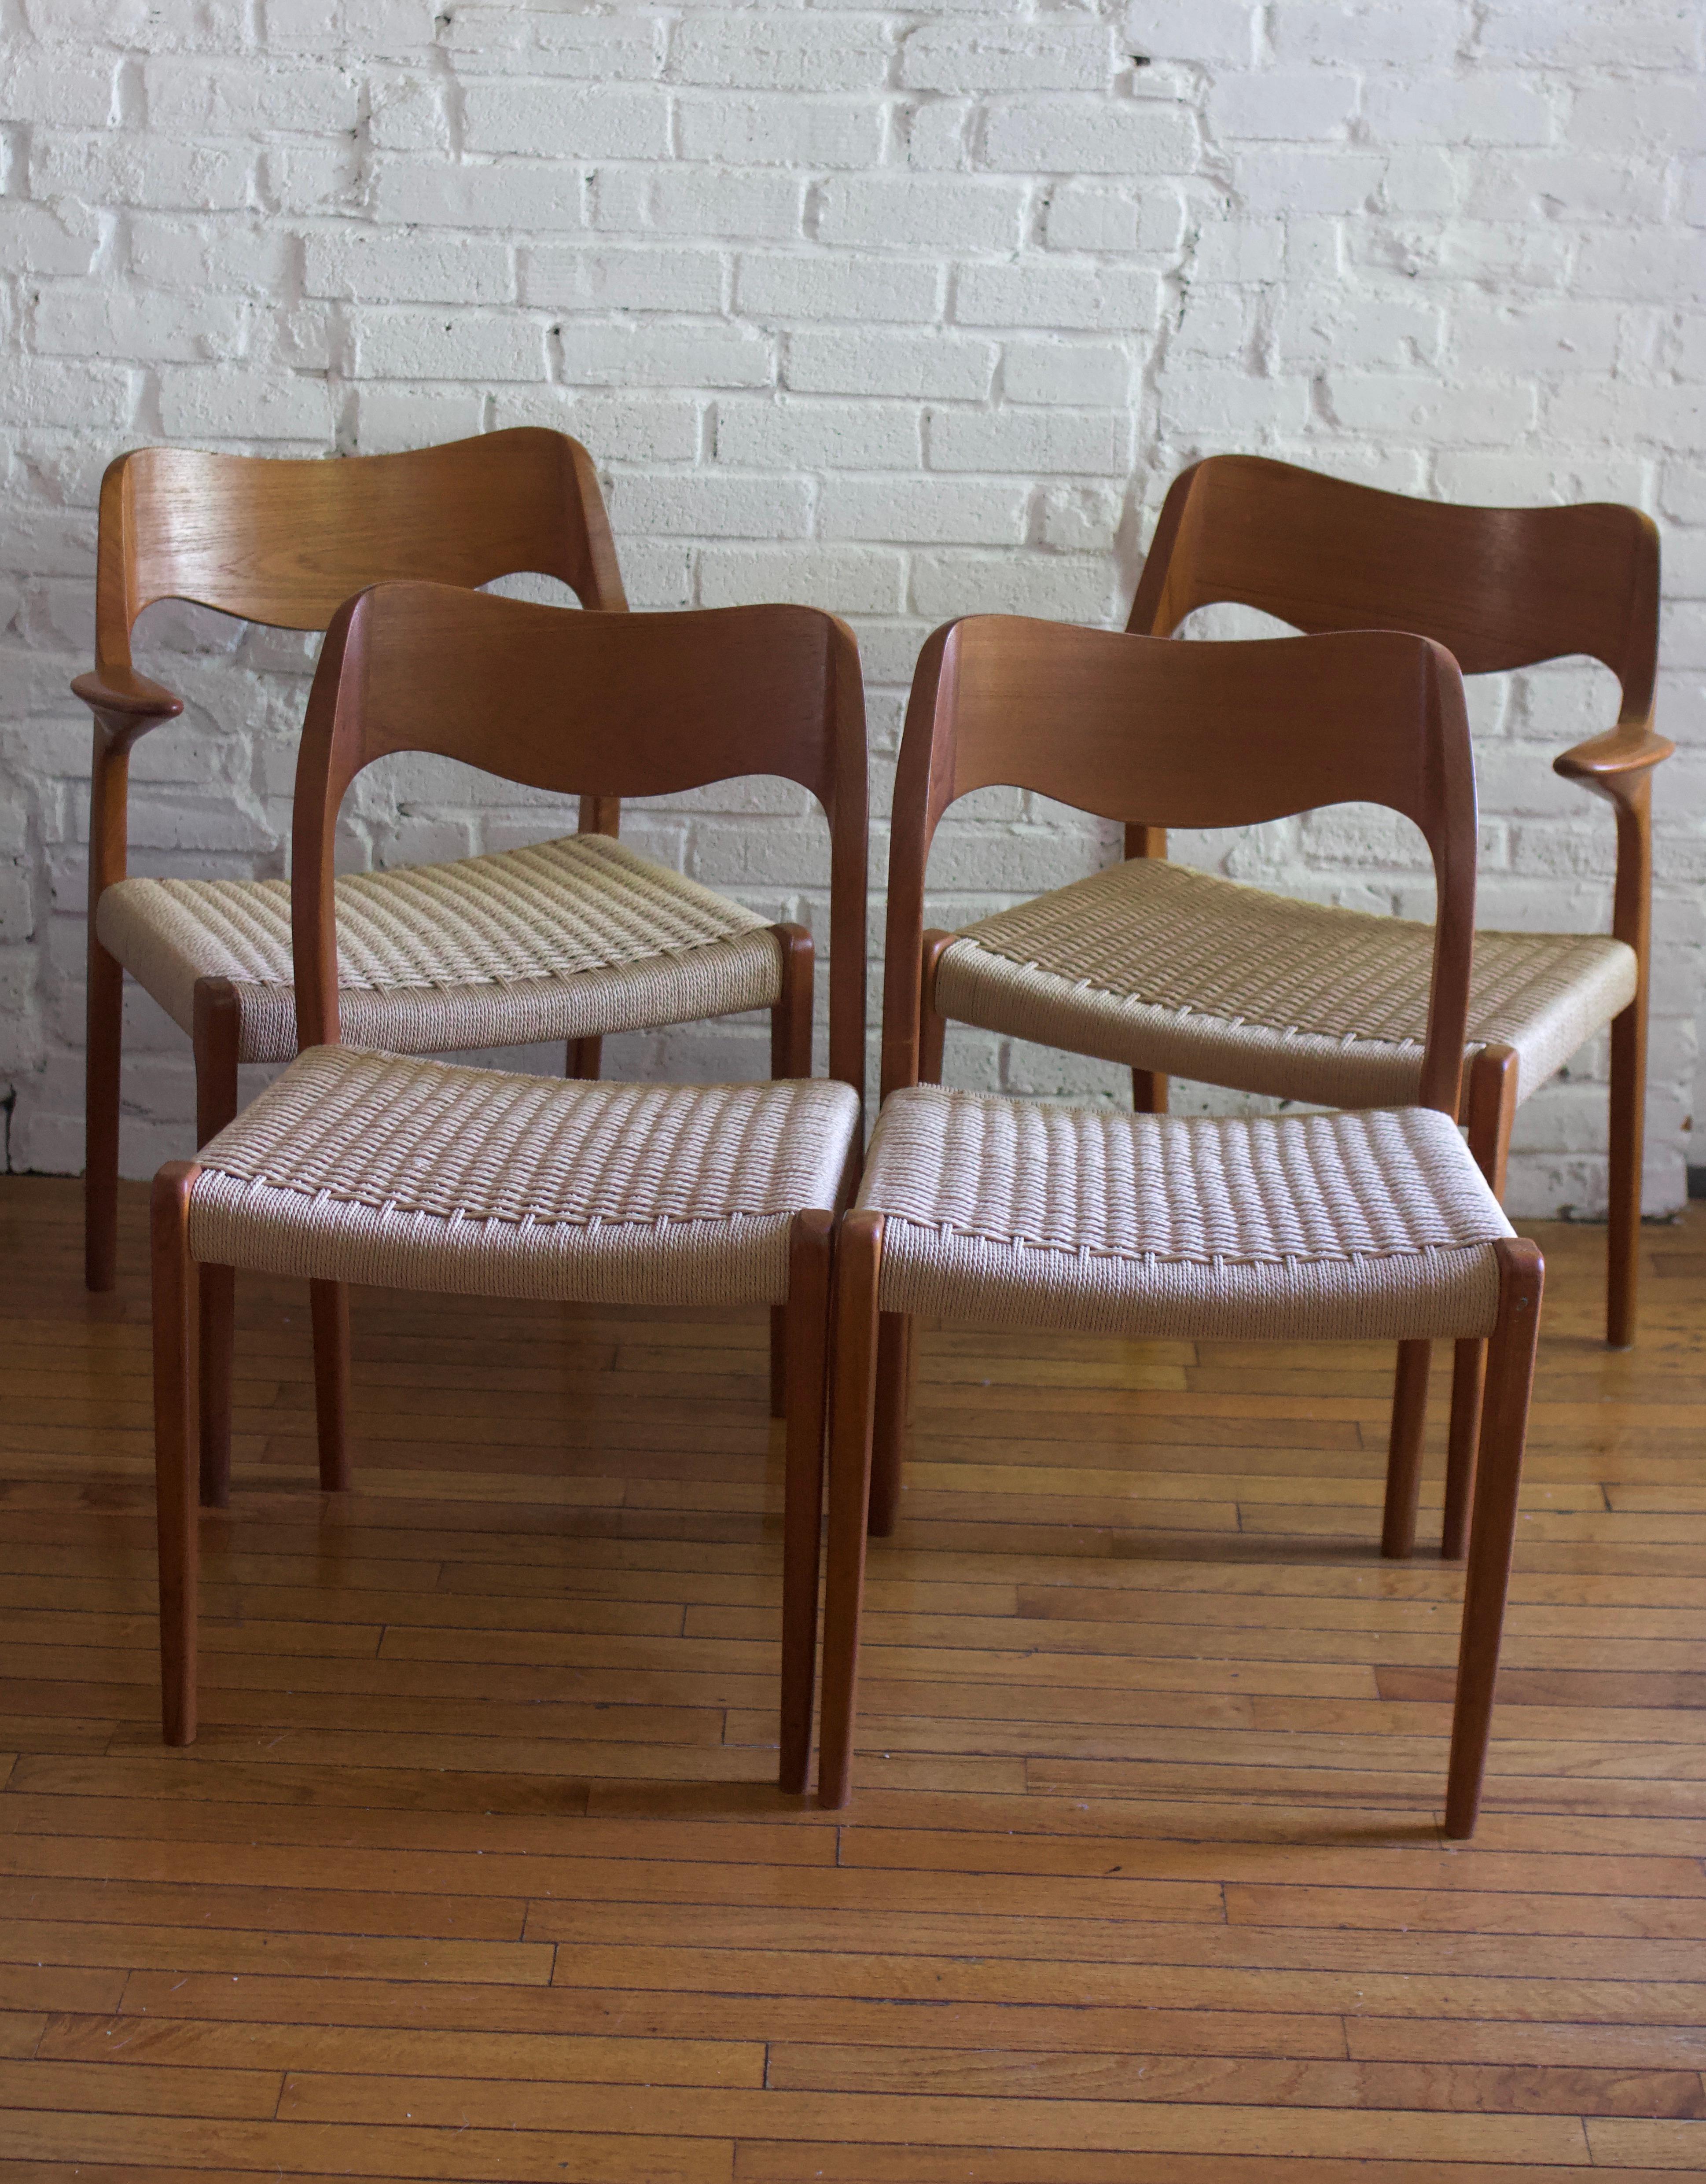 Fantastisches Paar Niels O. Møller Model 71 Stühle Esszimmerstühle. Skulpturaler Hartholzrahmen aus Teakholz und Sitze aus dänischem Cord. Eine neue dänische Kordel wurde gerade fertiggestellt. 

Hergestellt in Dänemark und 1951 von dem berühmten